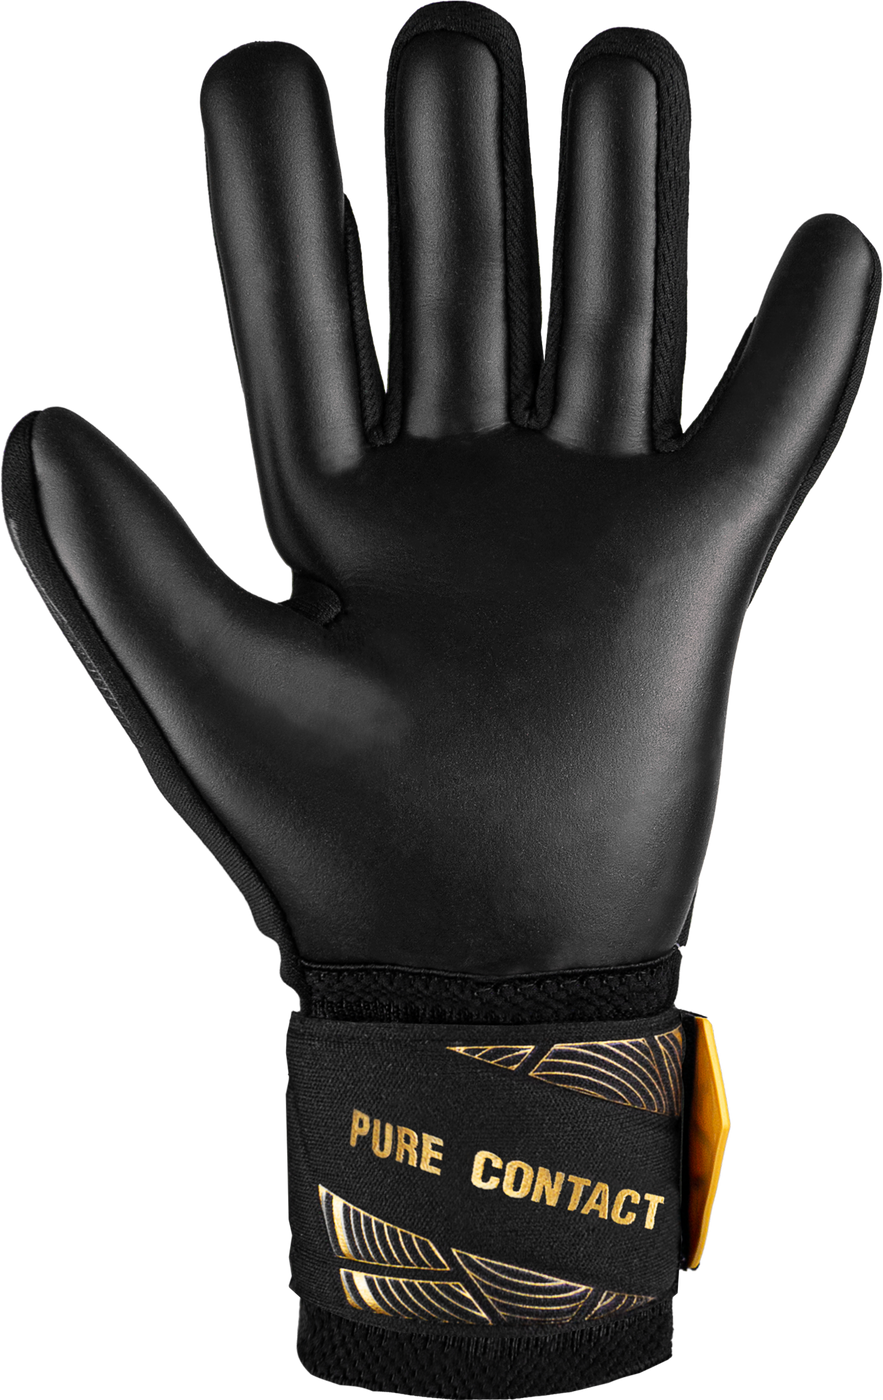 Вратарские перчатки Reusch Pure Contact Infinity Junior купить